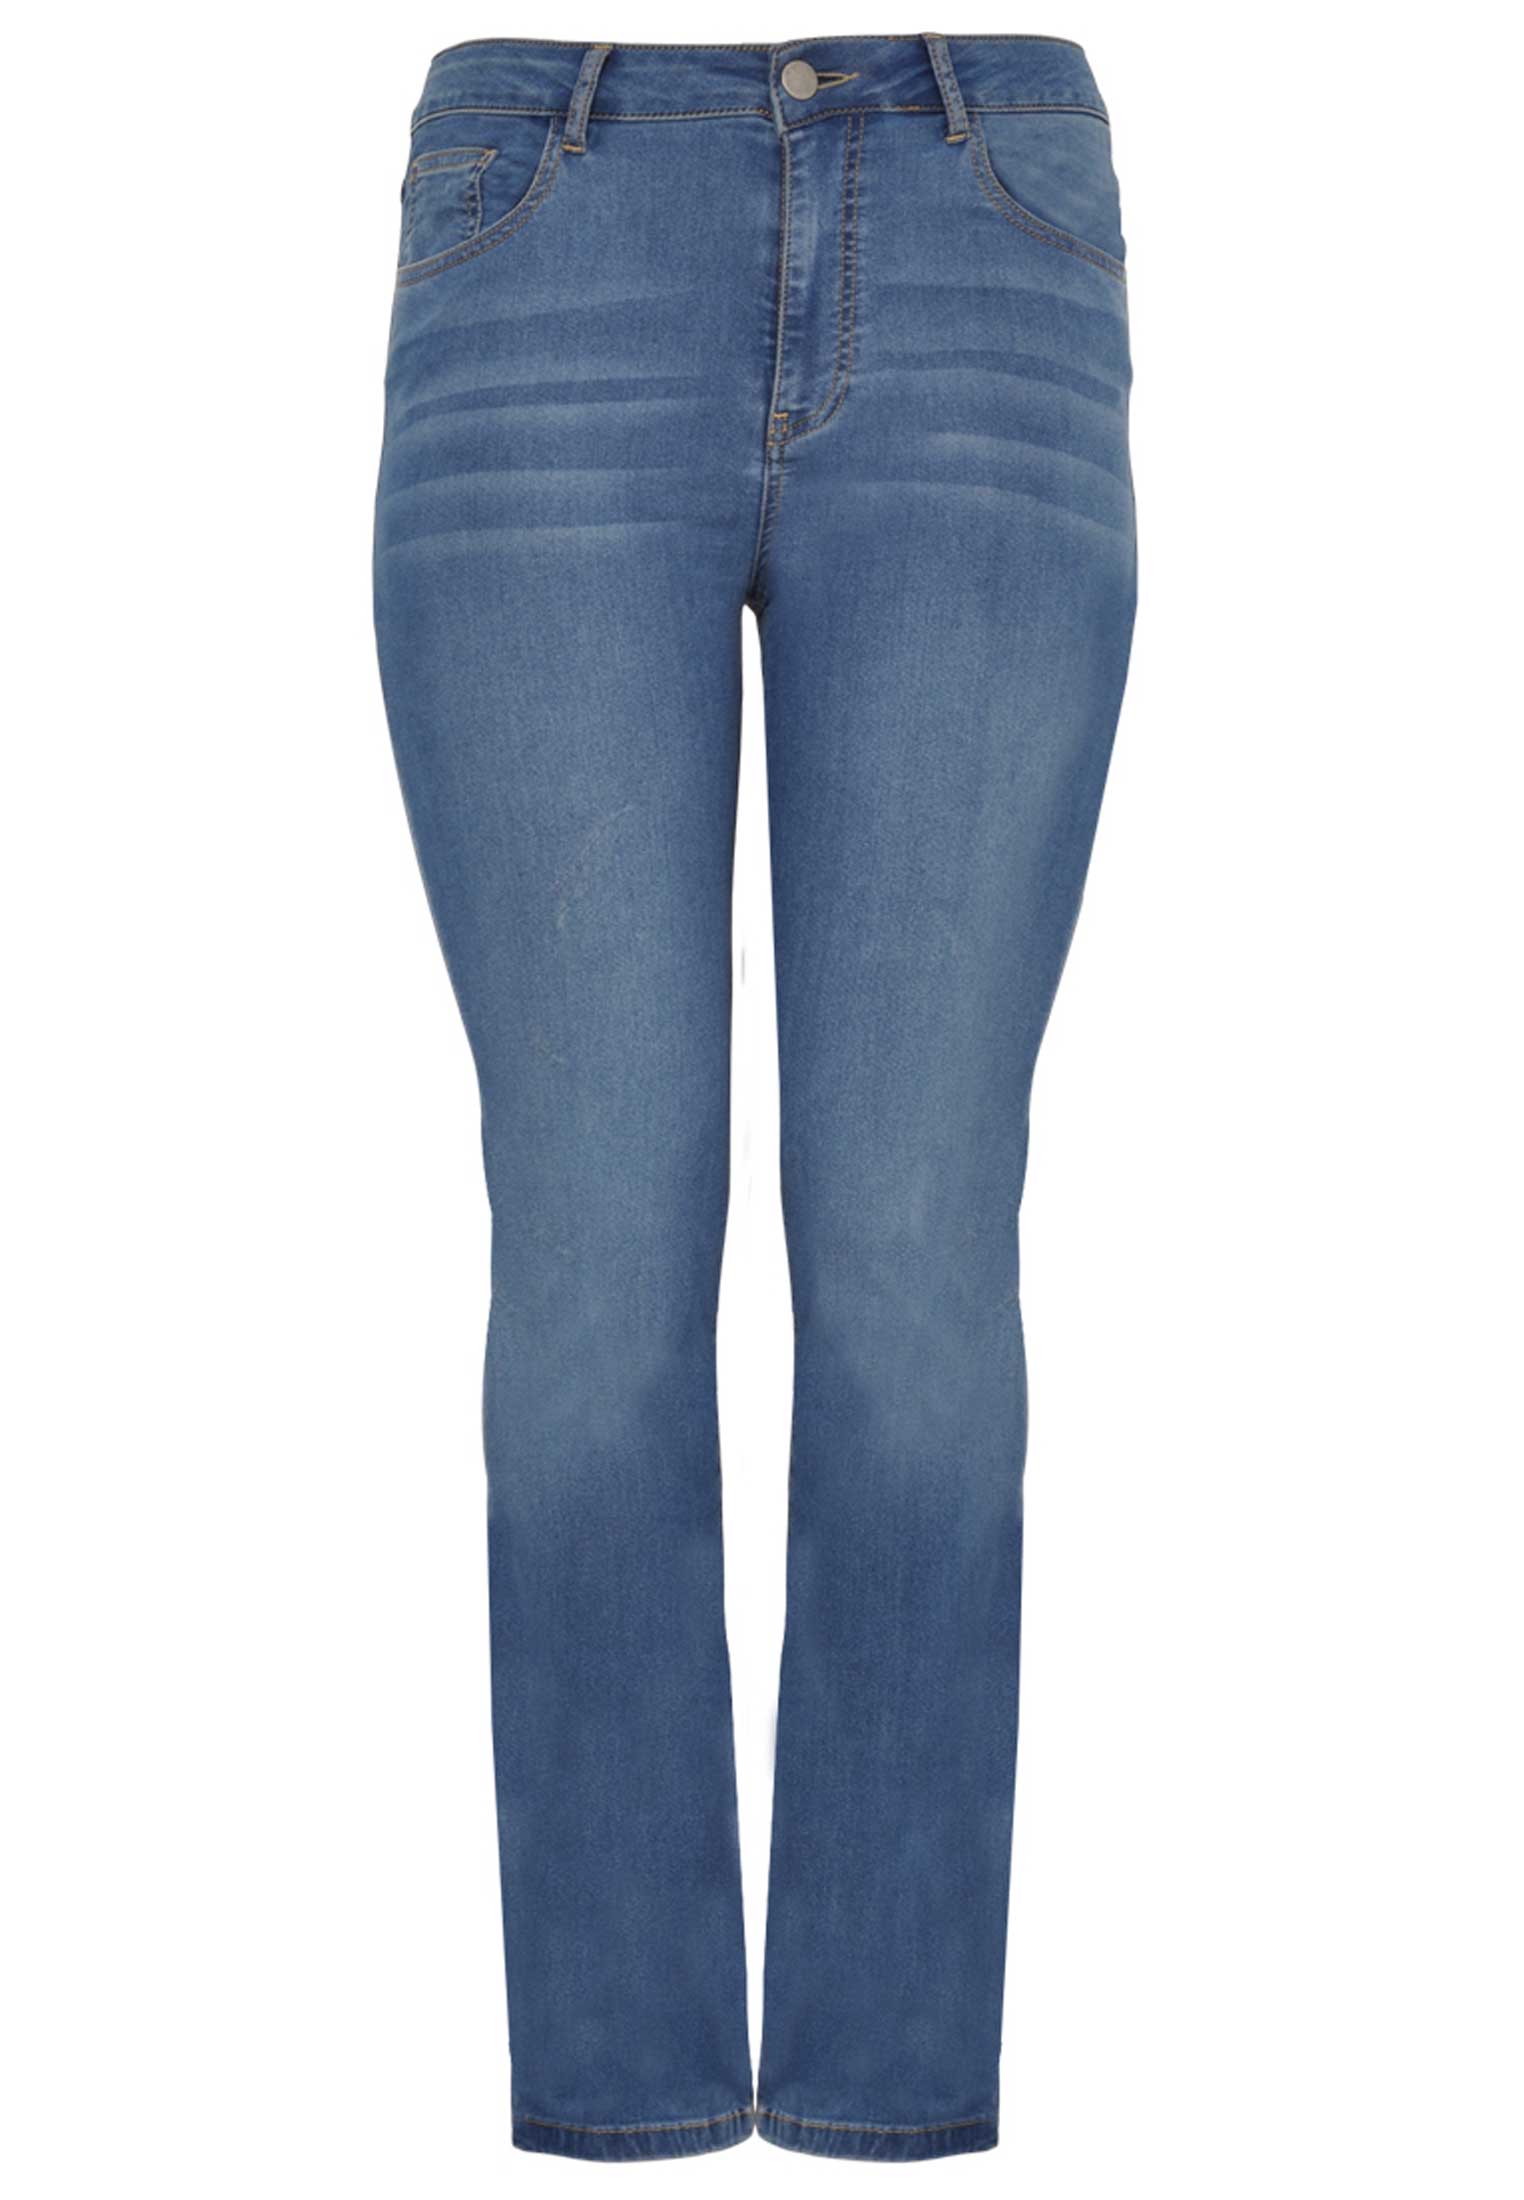 Jeans met rechte pijp 50 indigo